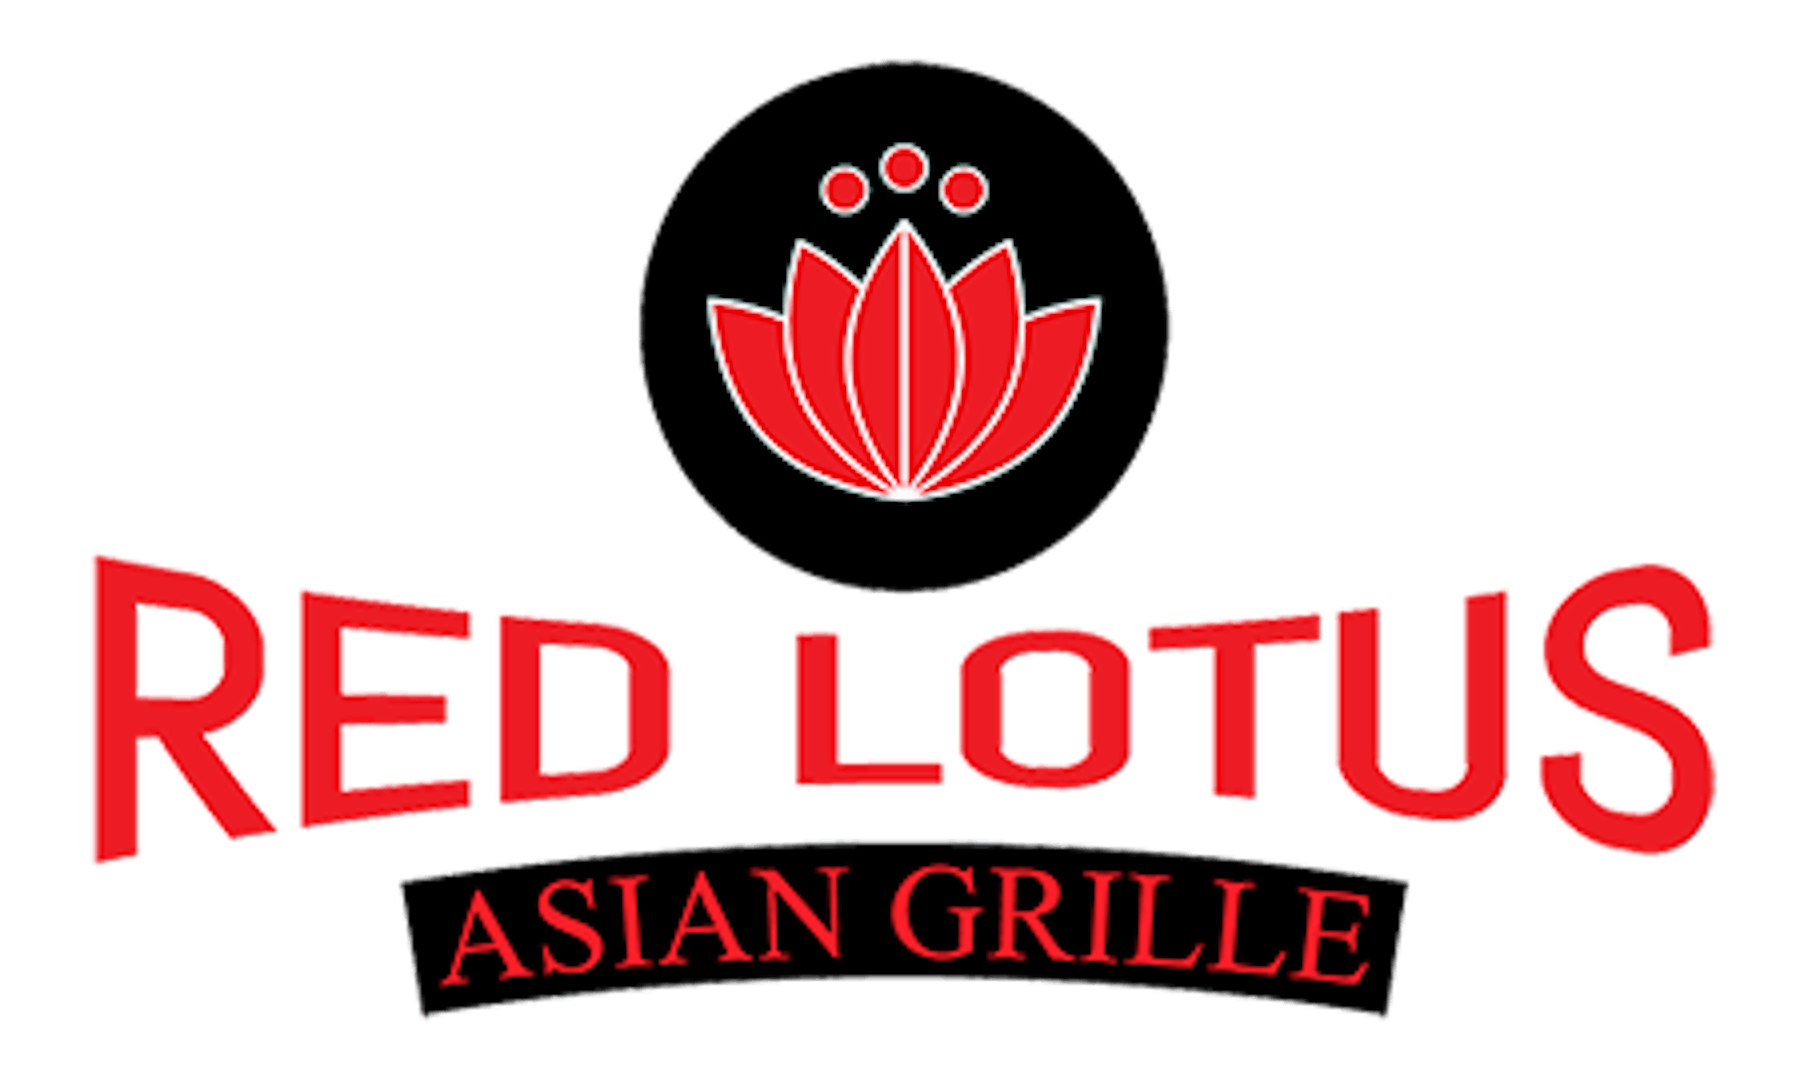 Red Lotus Asian Grille Austin Tx 78750 Menu Order Online